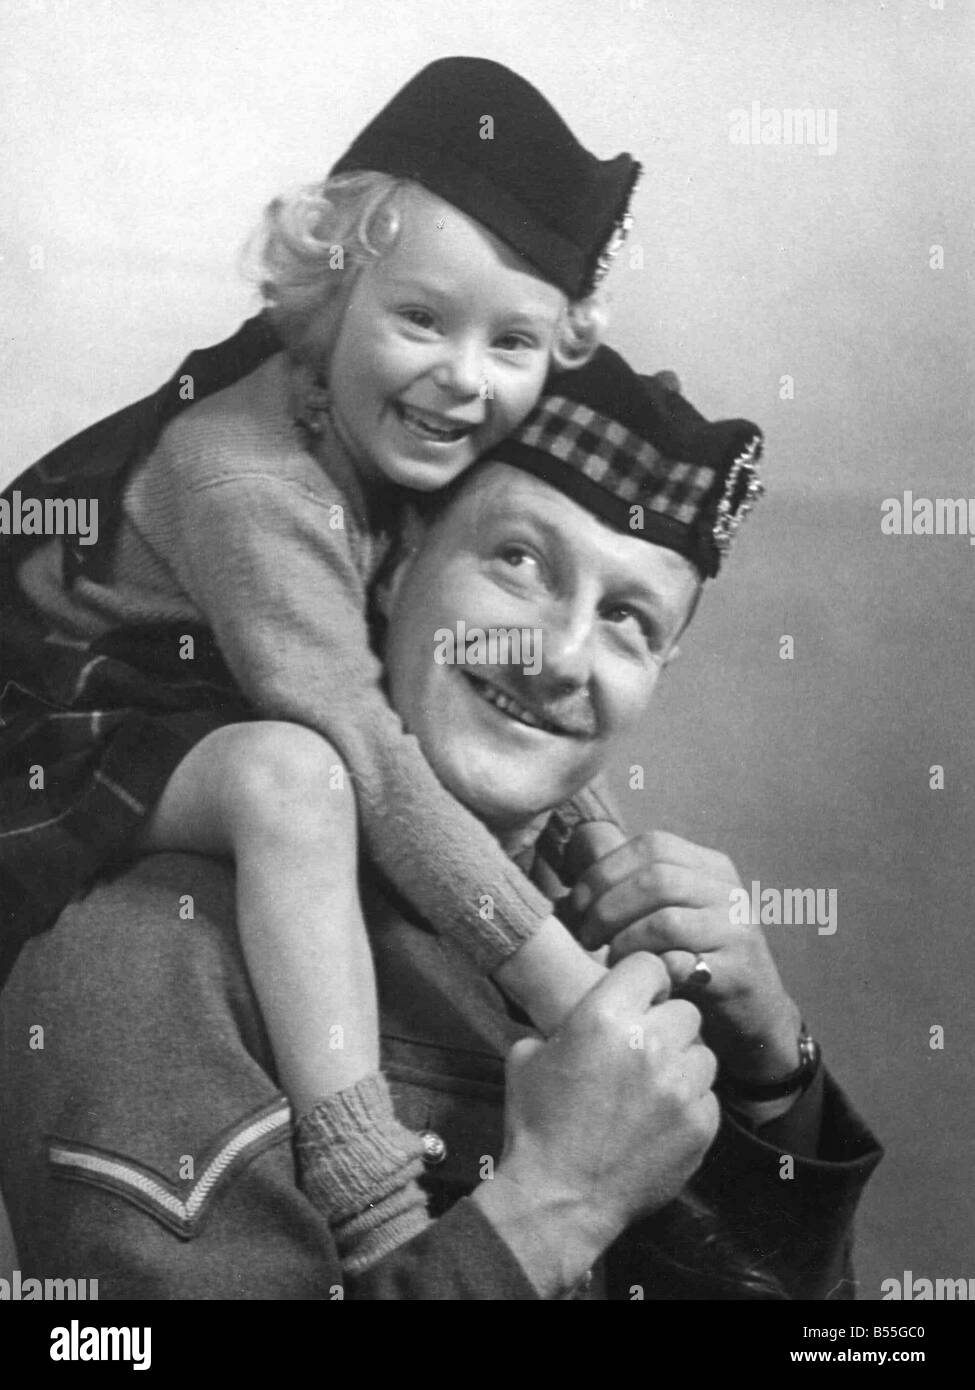 Giovane ragazza che indossa un cappello con il design di tartan seduta di suo padre, spalla, indossando uniforme militare;Circa 1945;P044445 Foto Stock